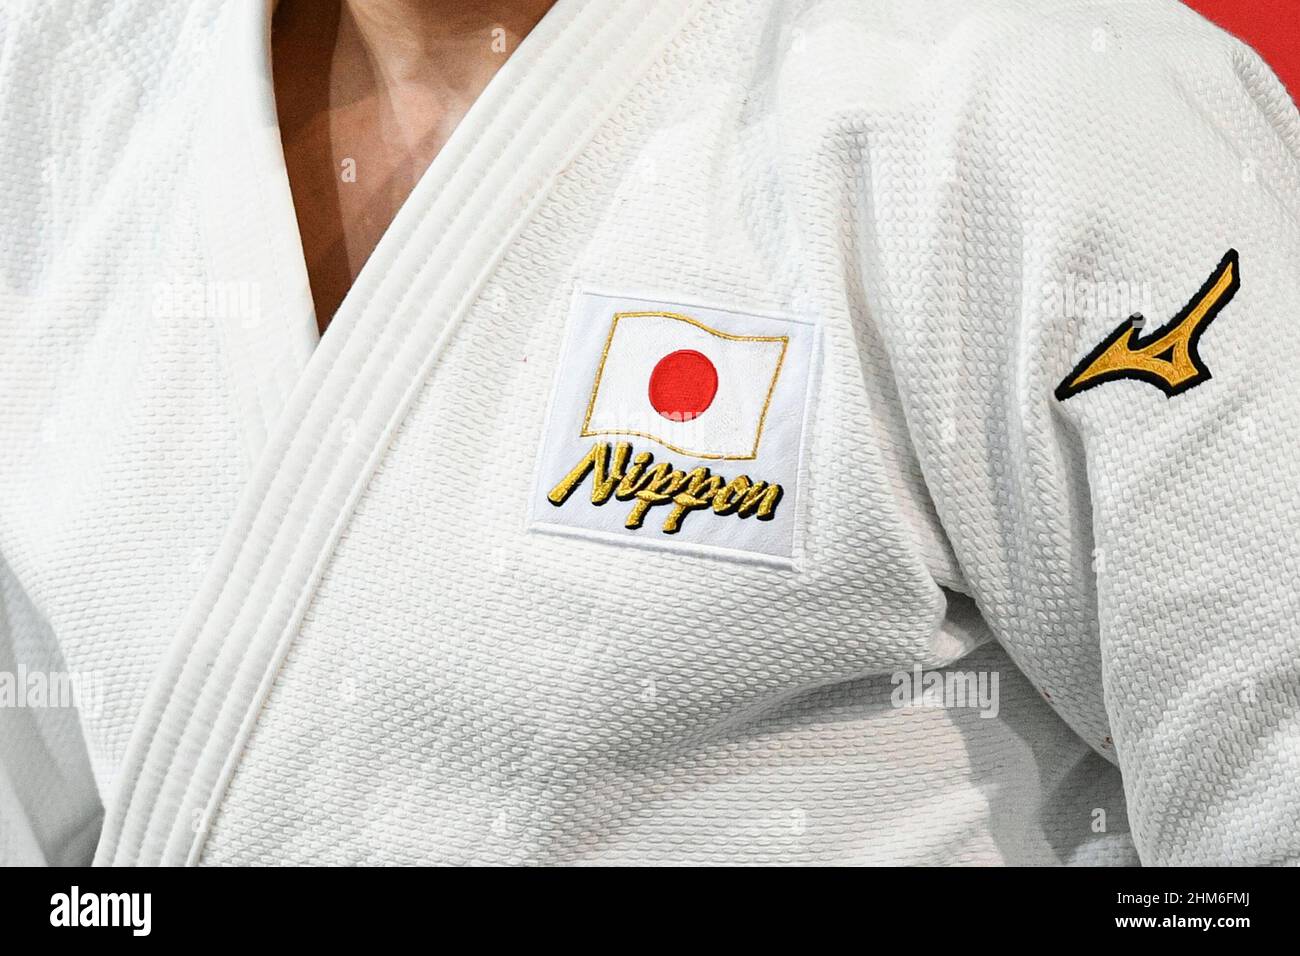 La ilustración muestra un judogi/kimono Mizuno blanco de Japón de un  luchador judoka/judo con la bandera japonesa (equipo con el logotipo de  Nippon) durante el Grand Slam 2022 de París, IJF World